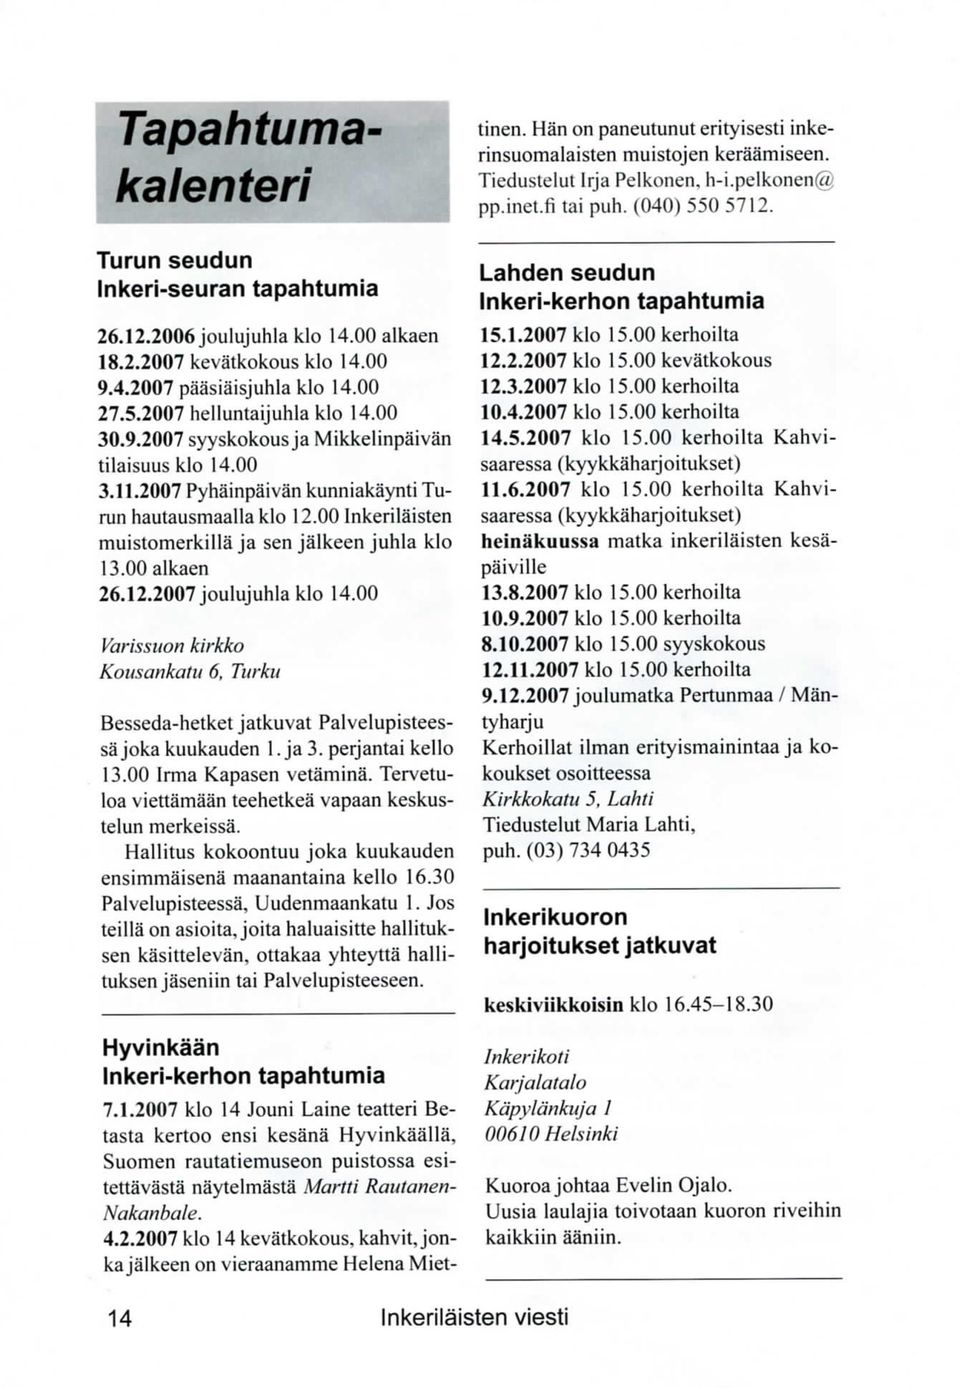 00 Inkerila'isten muistomerkilla ja sen jalkeen juhla klo 13.00 alkaen 26.12.2007 joulujuhla klo 14.00 Varissuon kirkko Kotisankatu 6, Turku Besseda-hetket jatkuvat Palvelupisteessajoka kuukauden 1.